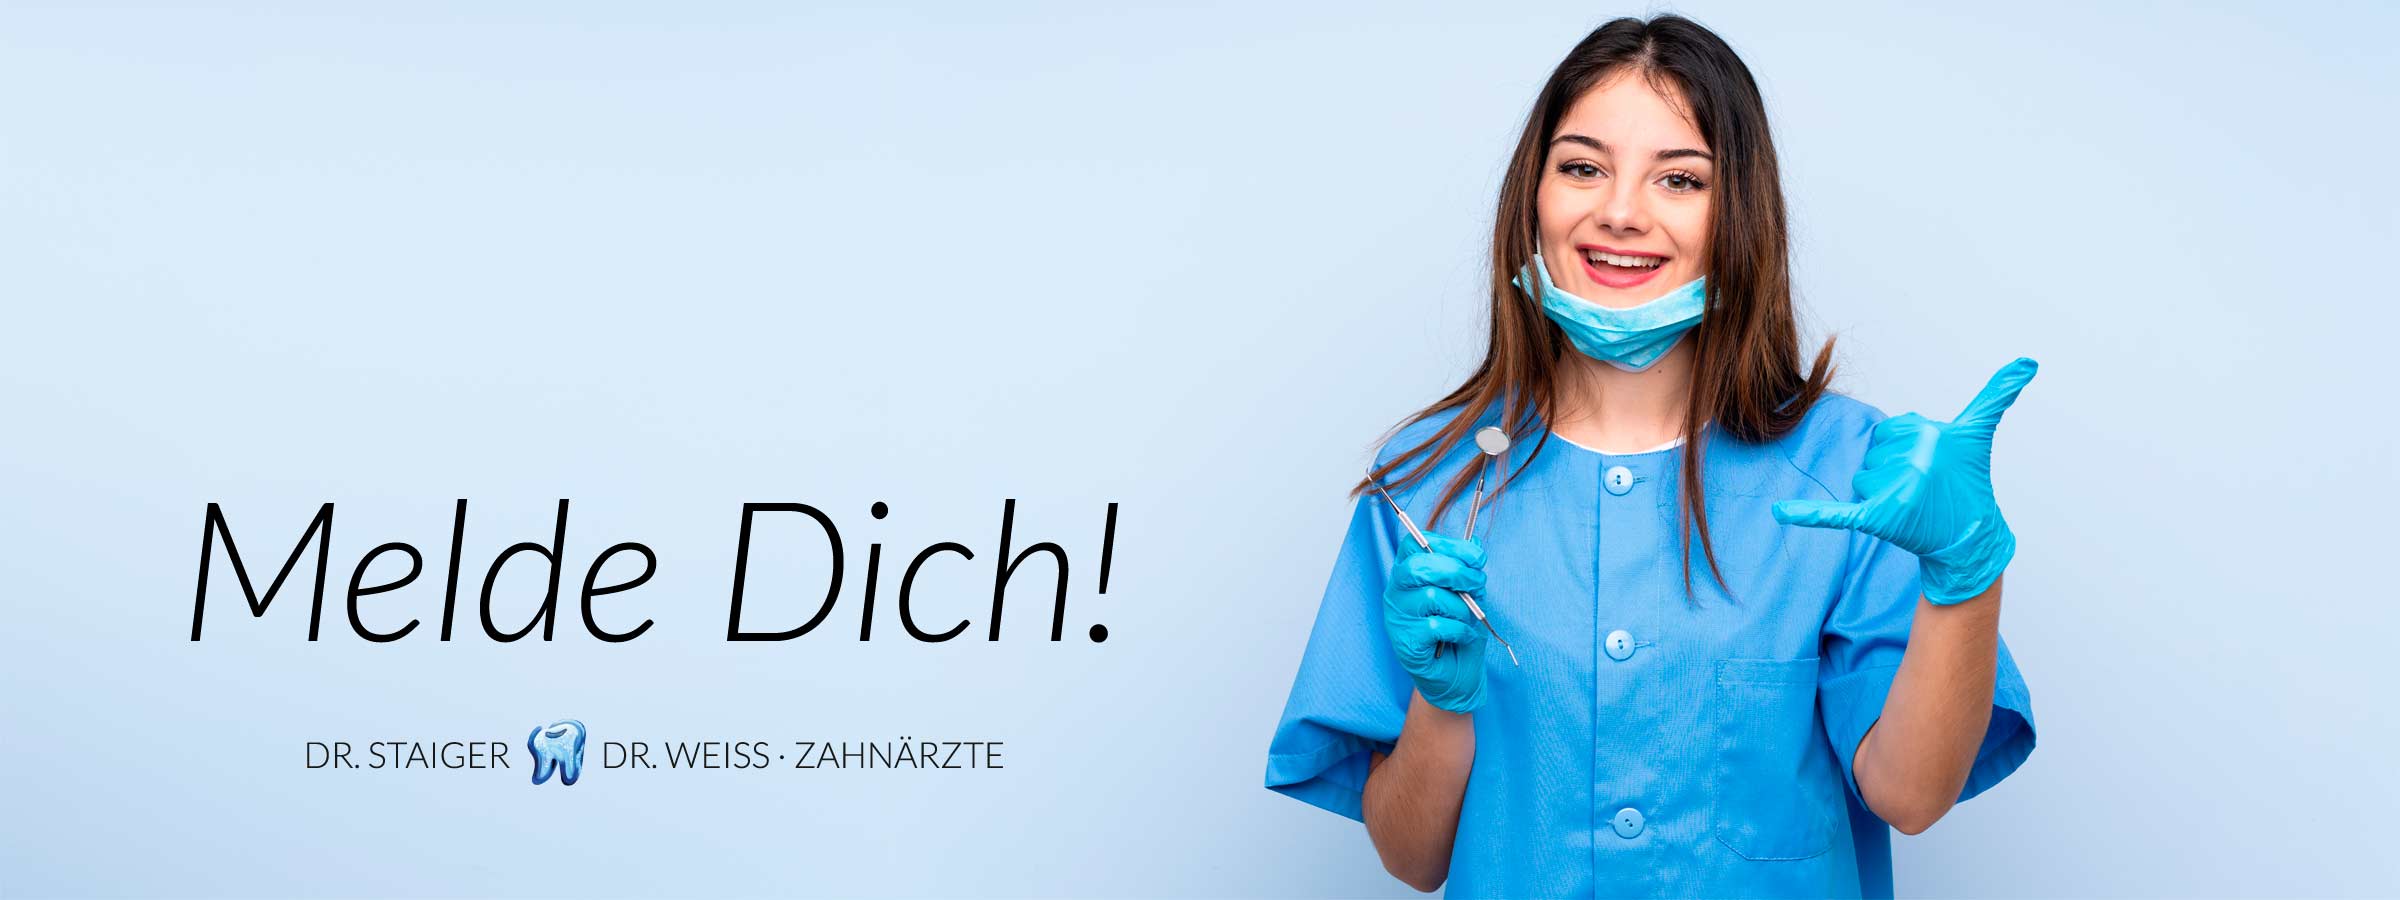 Stellenangebote und Ausbildungsstellen bei der Zahnarztpraxis Staiger Weiss in Pfinztal | ©shutterstock.com/Luis Molinero